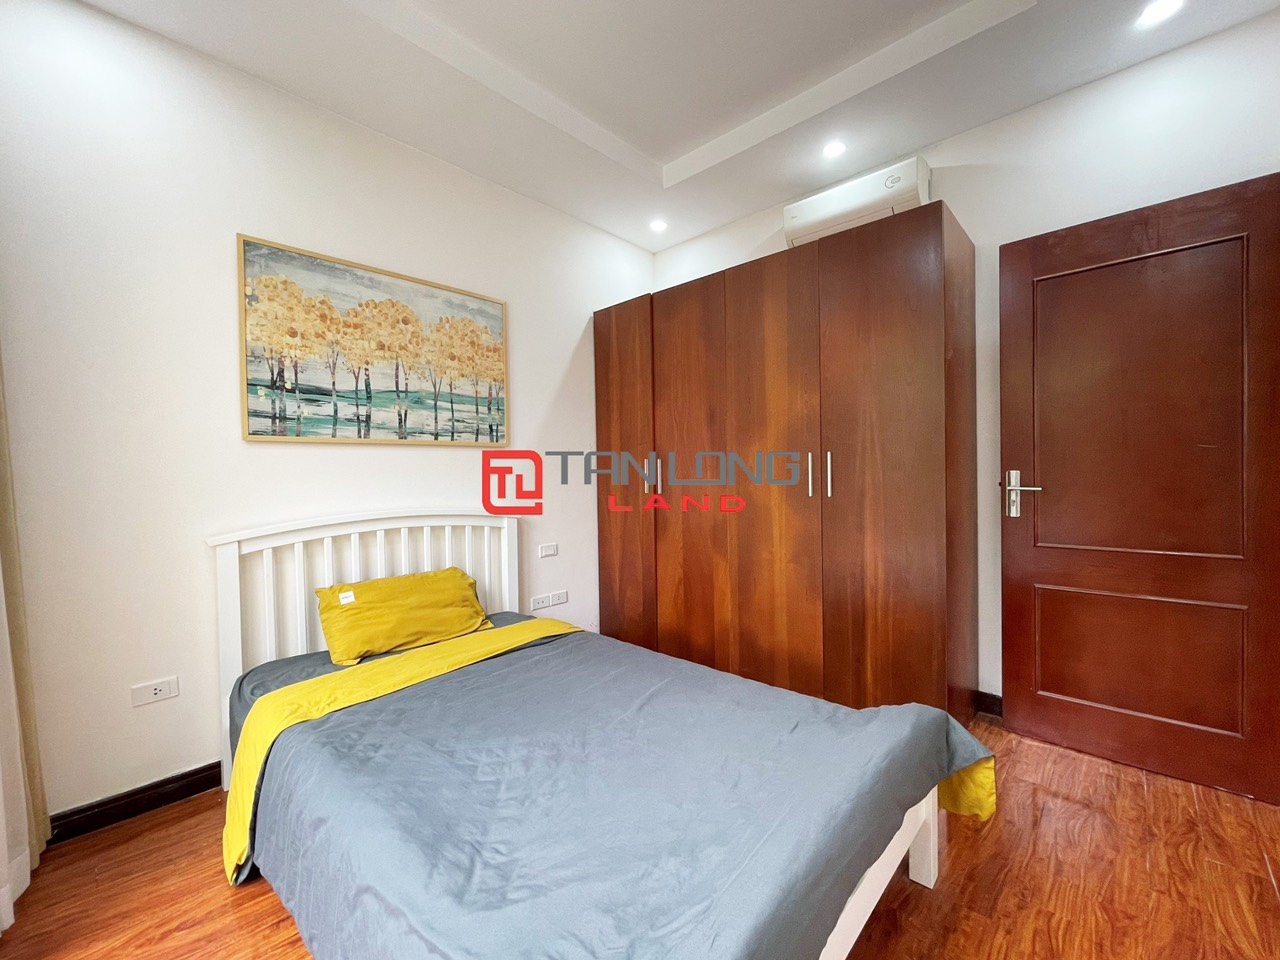 5 Bedrooms Duplex Villa for Rent with Reasonable Price in Vinhomes Riverside Long Bien 9